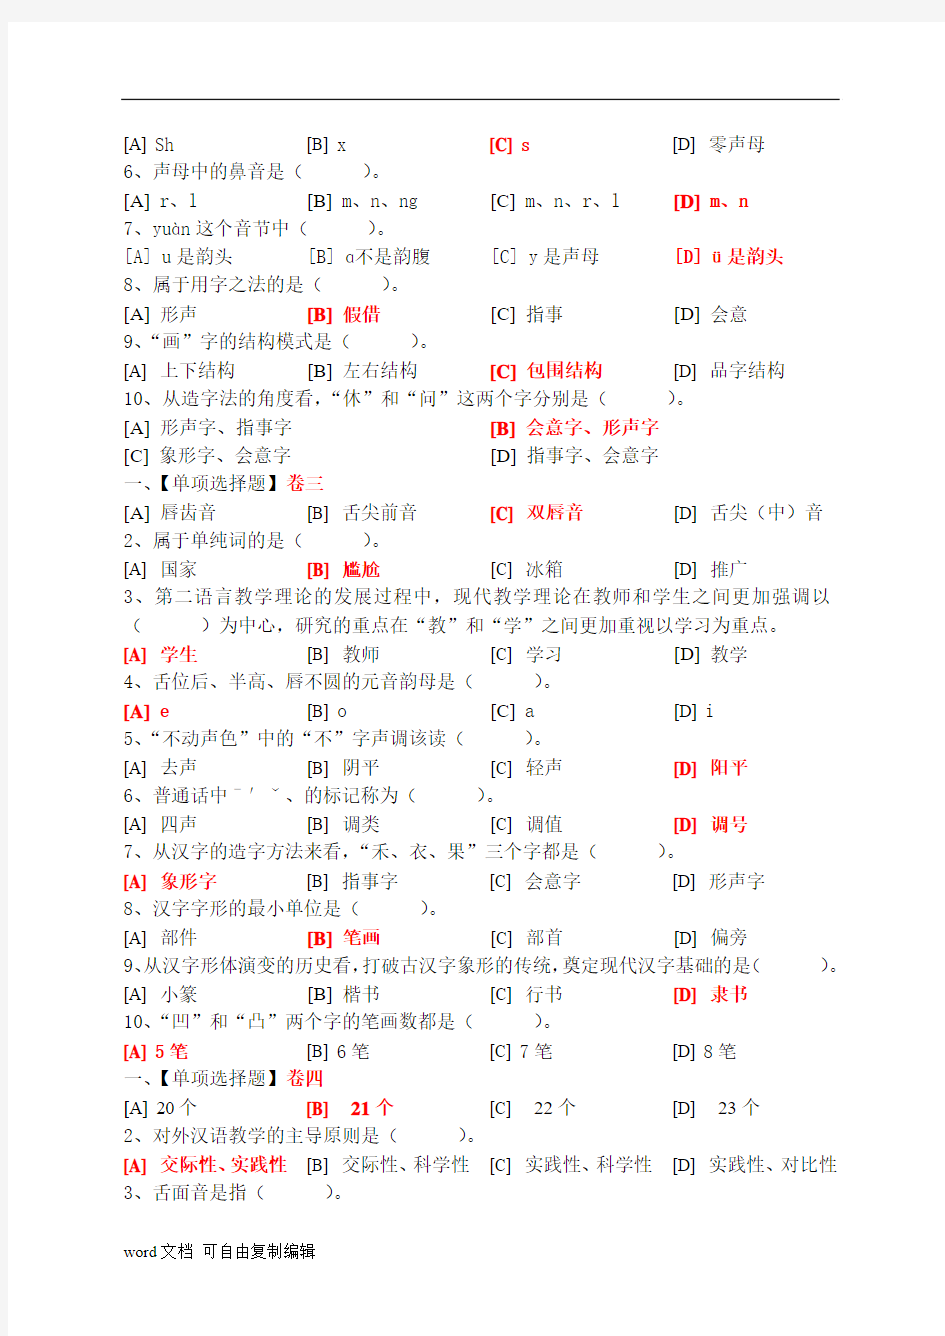 对外汉语课堂教学法(一)模拟试卷